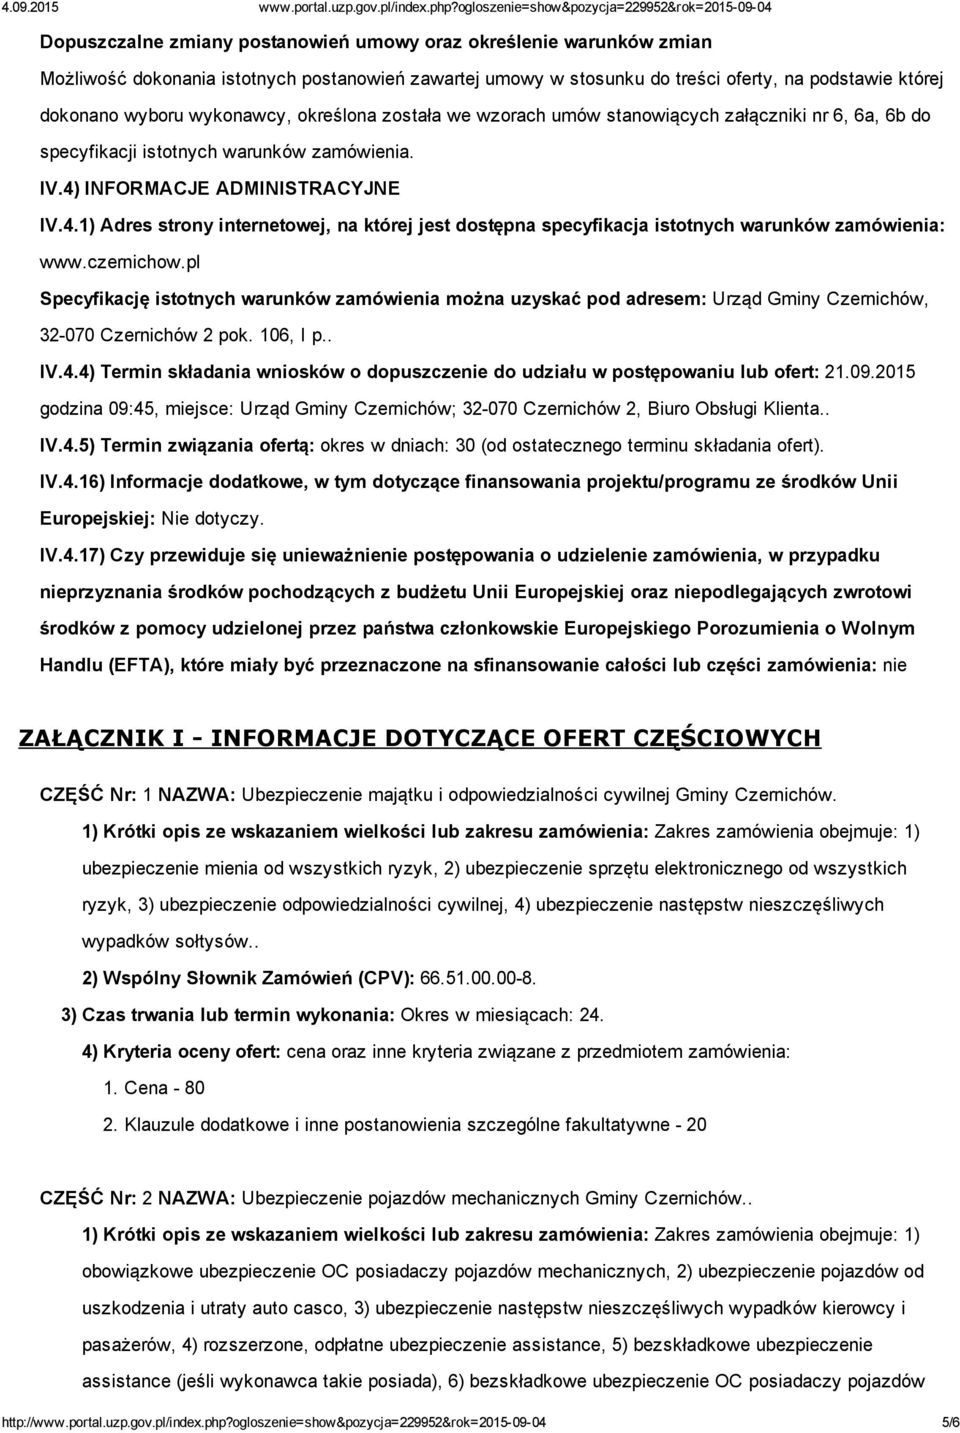 INFORMACJE ADMINISTRACYJNE IV.4.1) Adres strony internetowej, na której jest dostępna specyfikacja istotnych warunków zamówienia: www.czernichow.